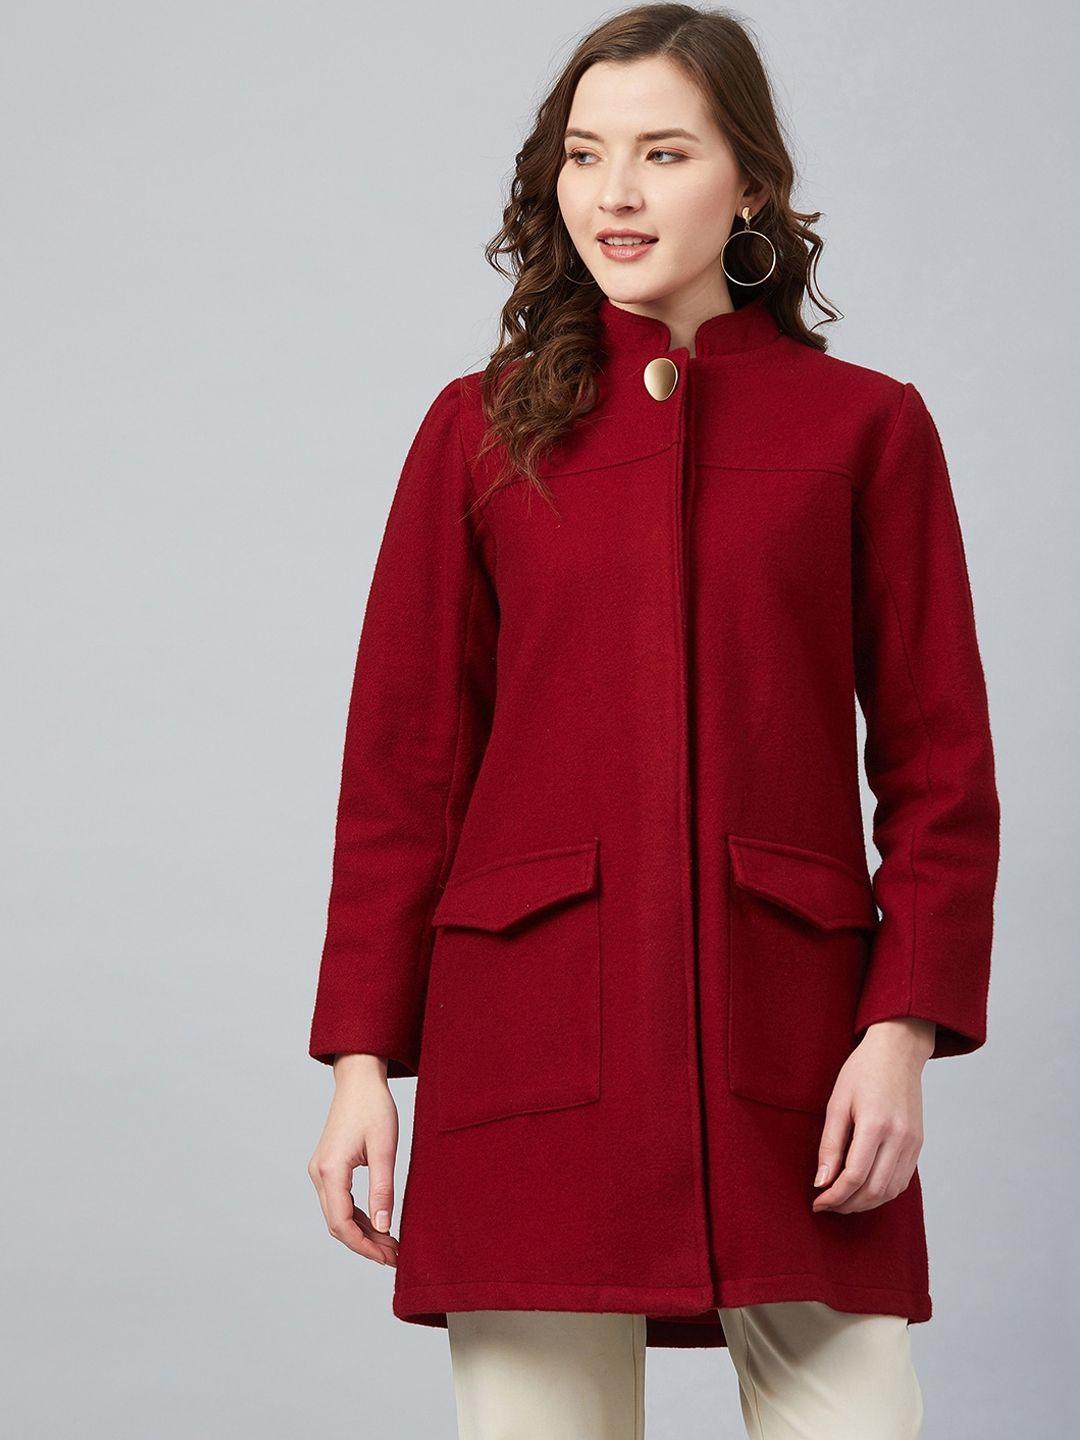 carlton-london-women-maroon-solid-overcoat